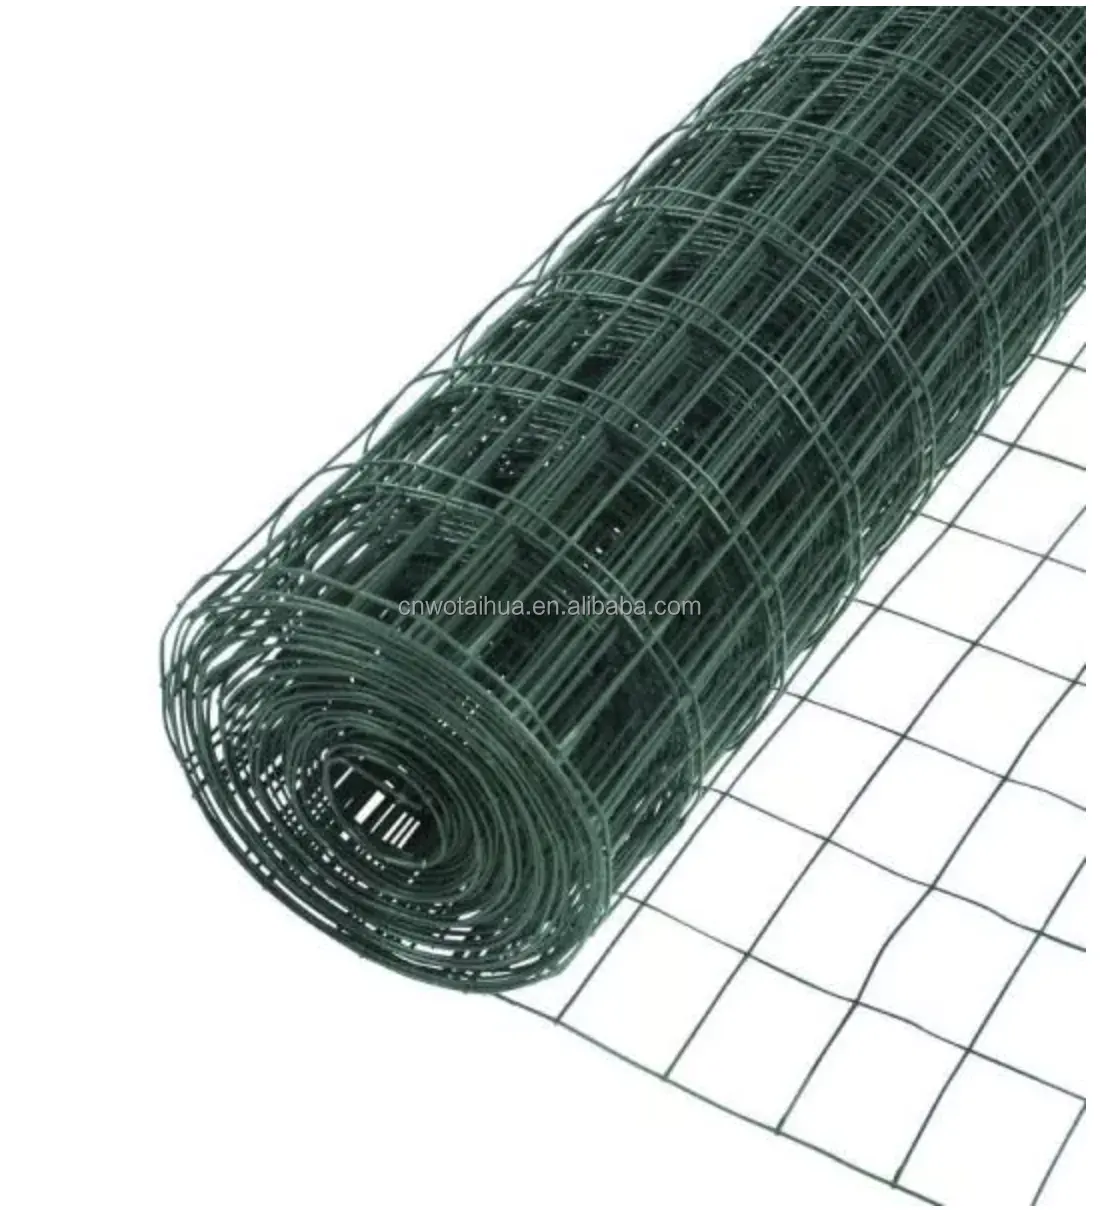 Jala kawat baja berlapis PVC 25*25mm, untuk pagar taman, jaring kelinci besi